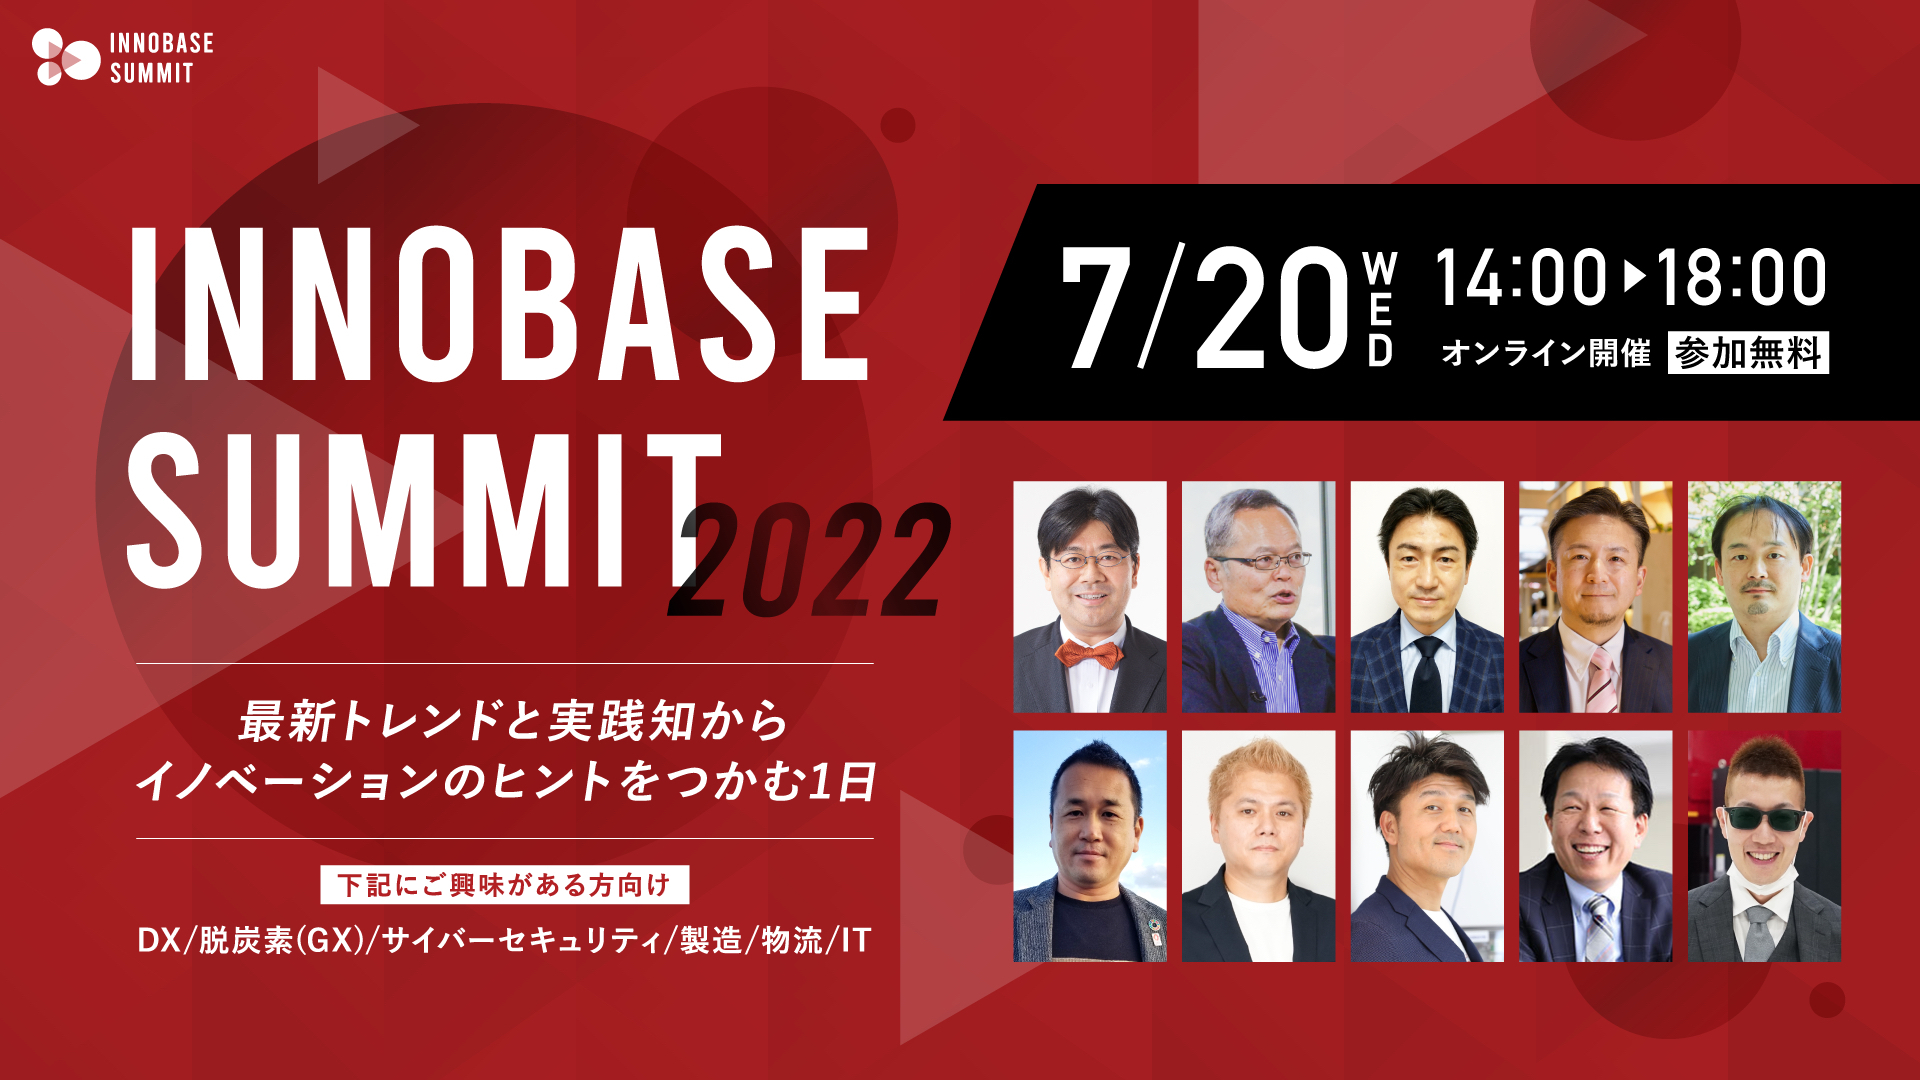 7月20日(水)に開催される「INNOBASE SUMMIT 2022」に協賛致します